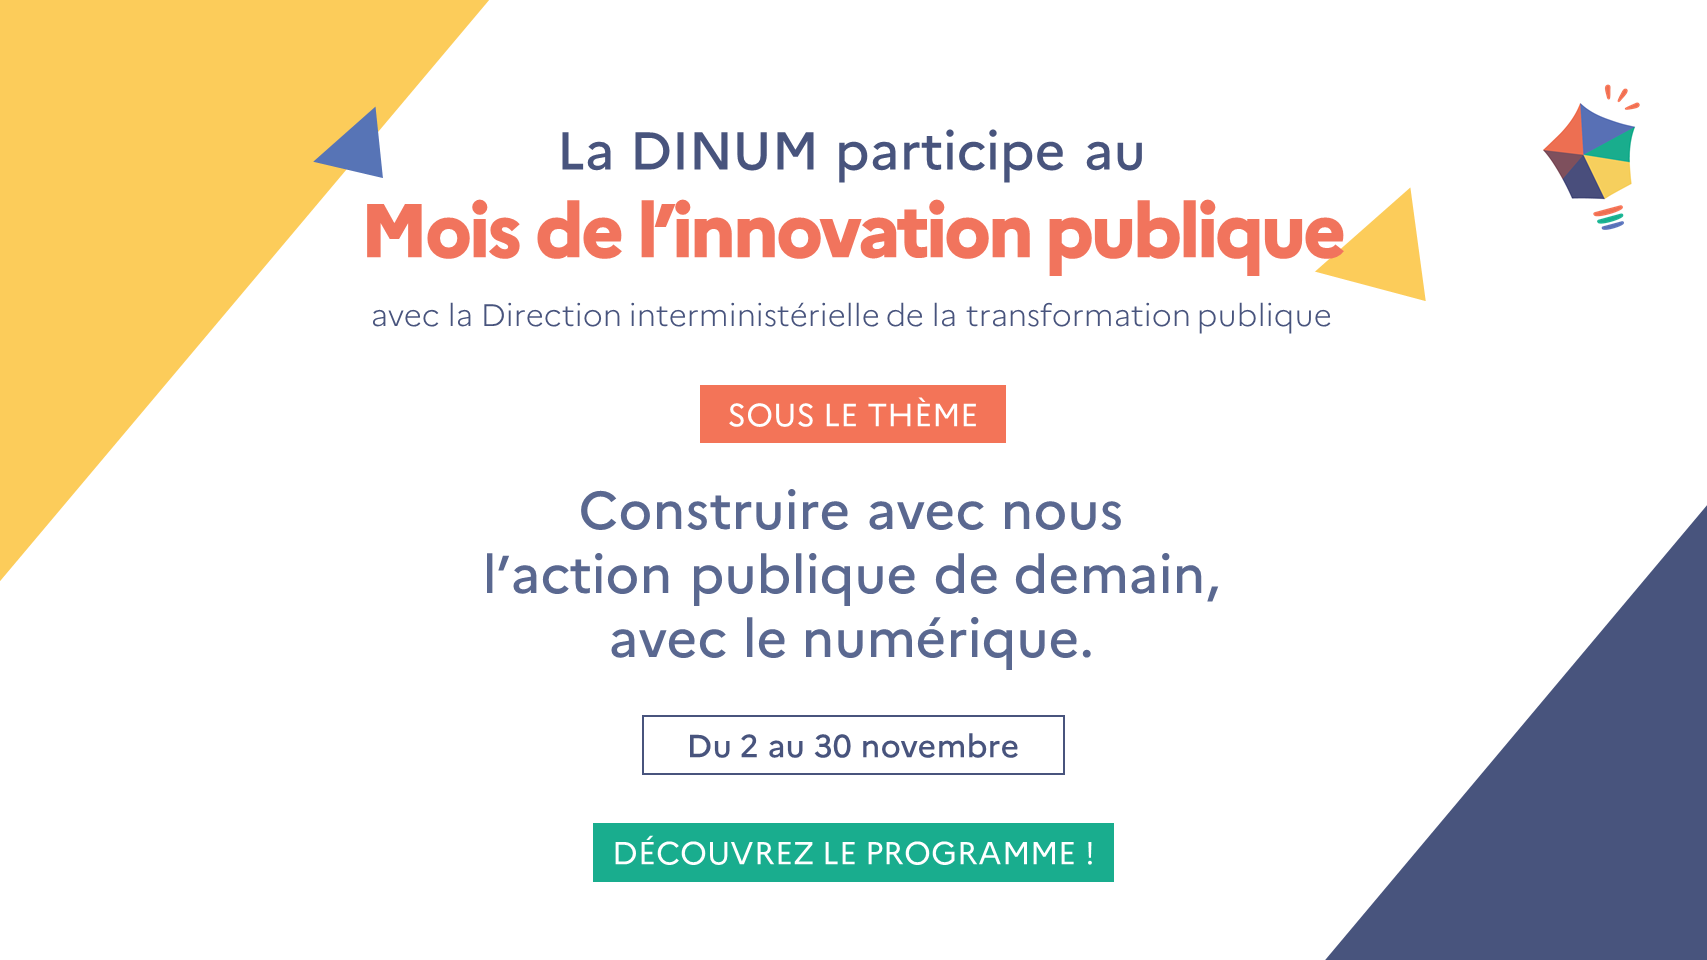 La DINUM participe au Mois de l'innovation publique avec la Direction interministérielle de la transformation publique sous le thème Construire avec nous l'action publique de demain, avec le numérique. Du 2 au 30 novembre. Découvrez le programme !